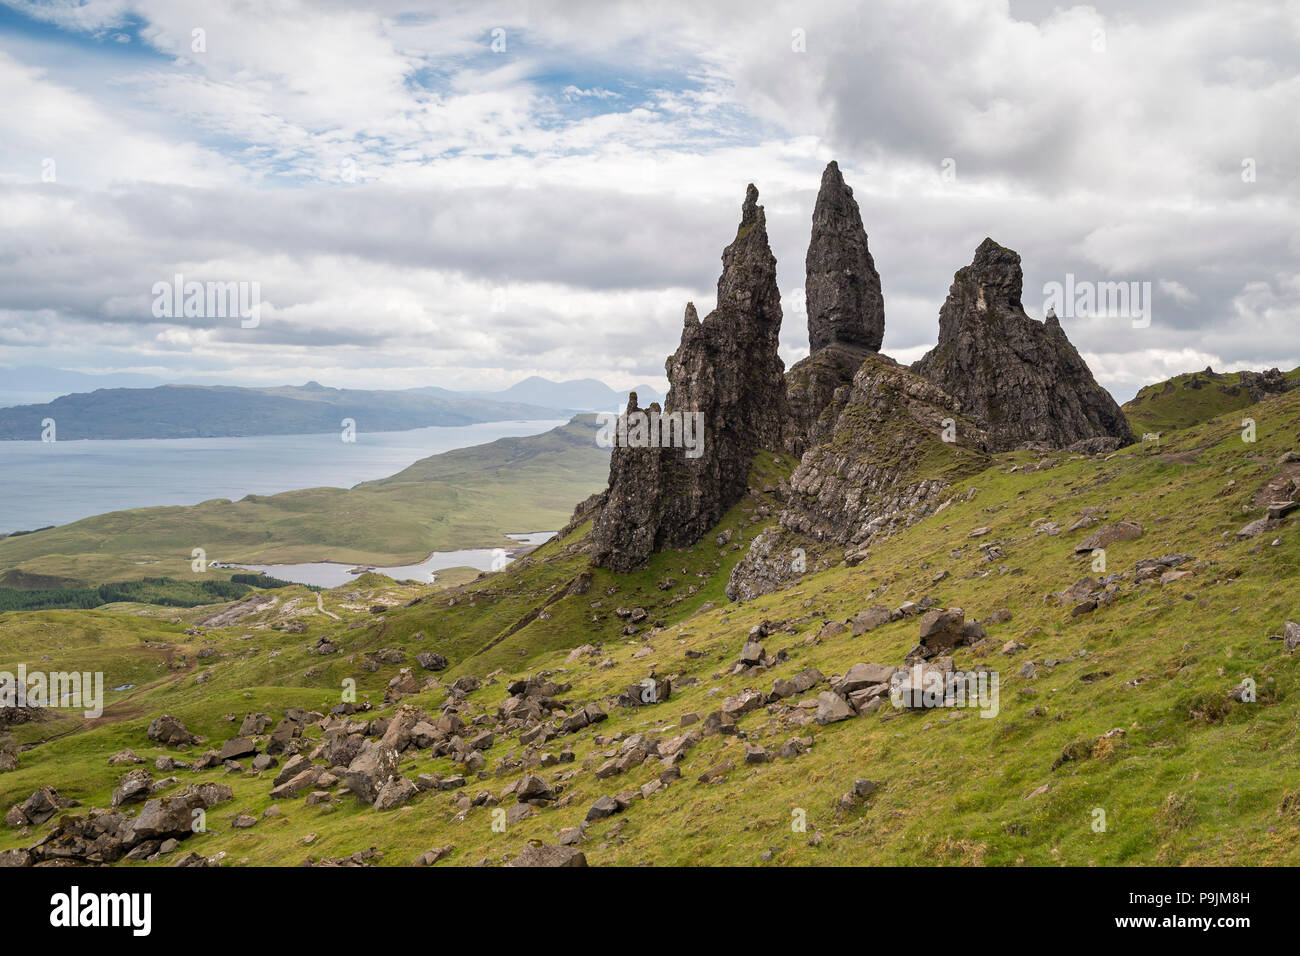 Alte Mann der Storr Rock Nadel, trotternish Halbinsel, Highlands, Isle of Skye, Innere Hebriden, Schottland, Vereinigtes Königreich Stockfoto